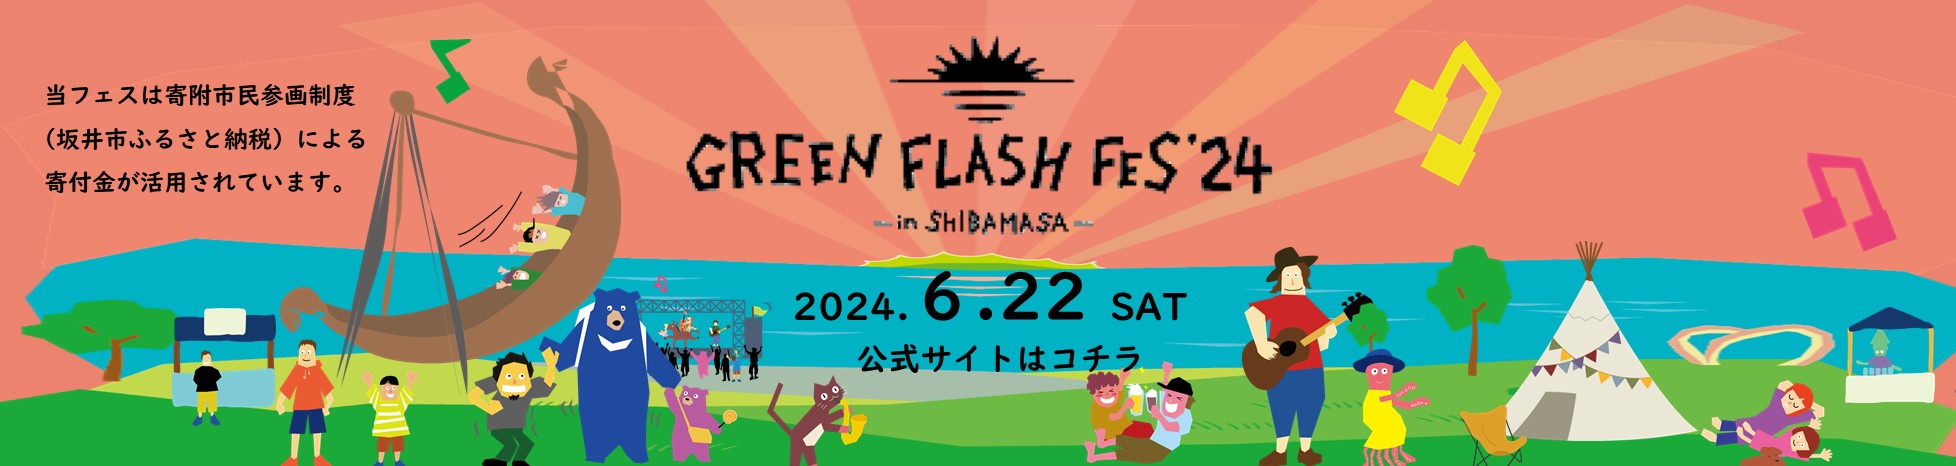 GreenFrashFES2024